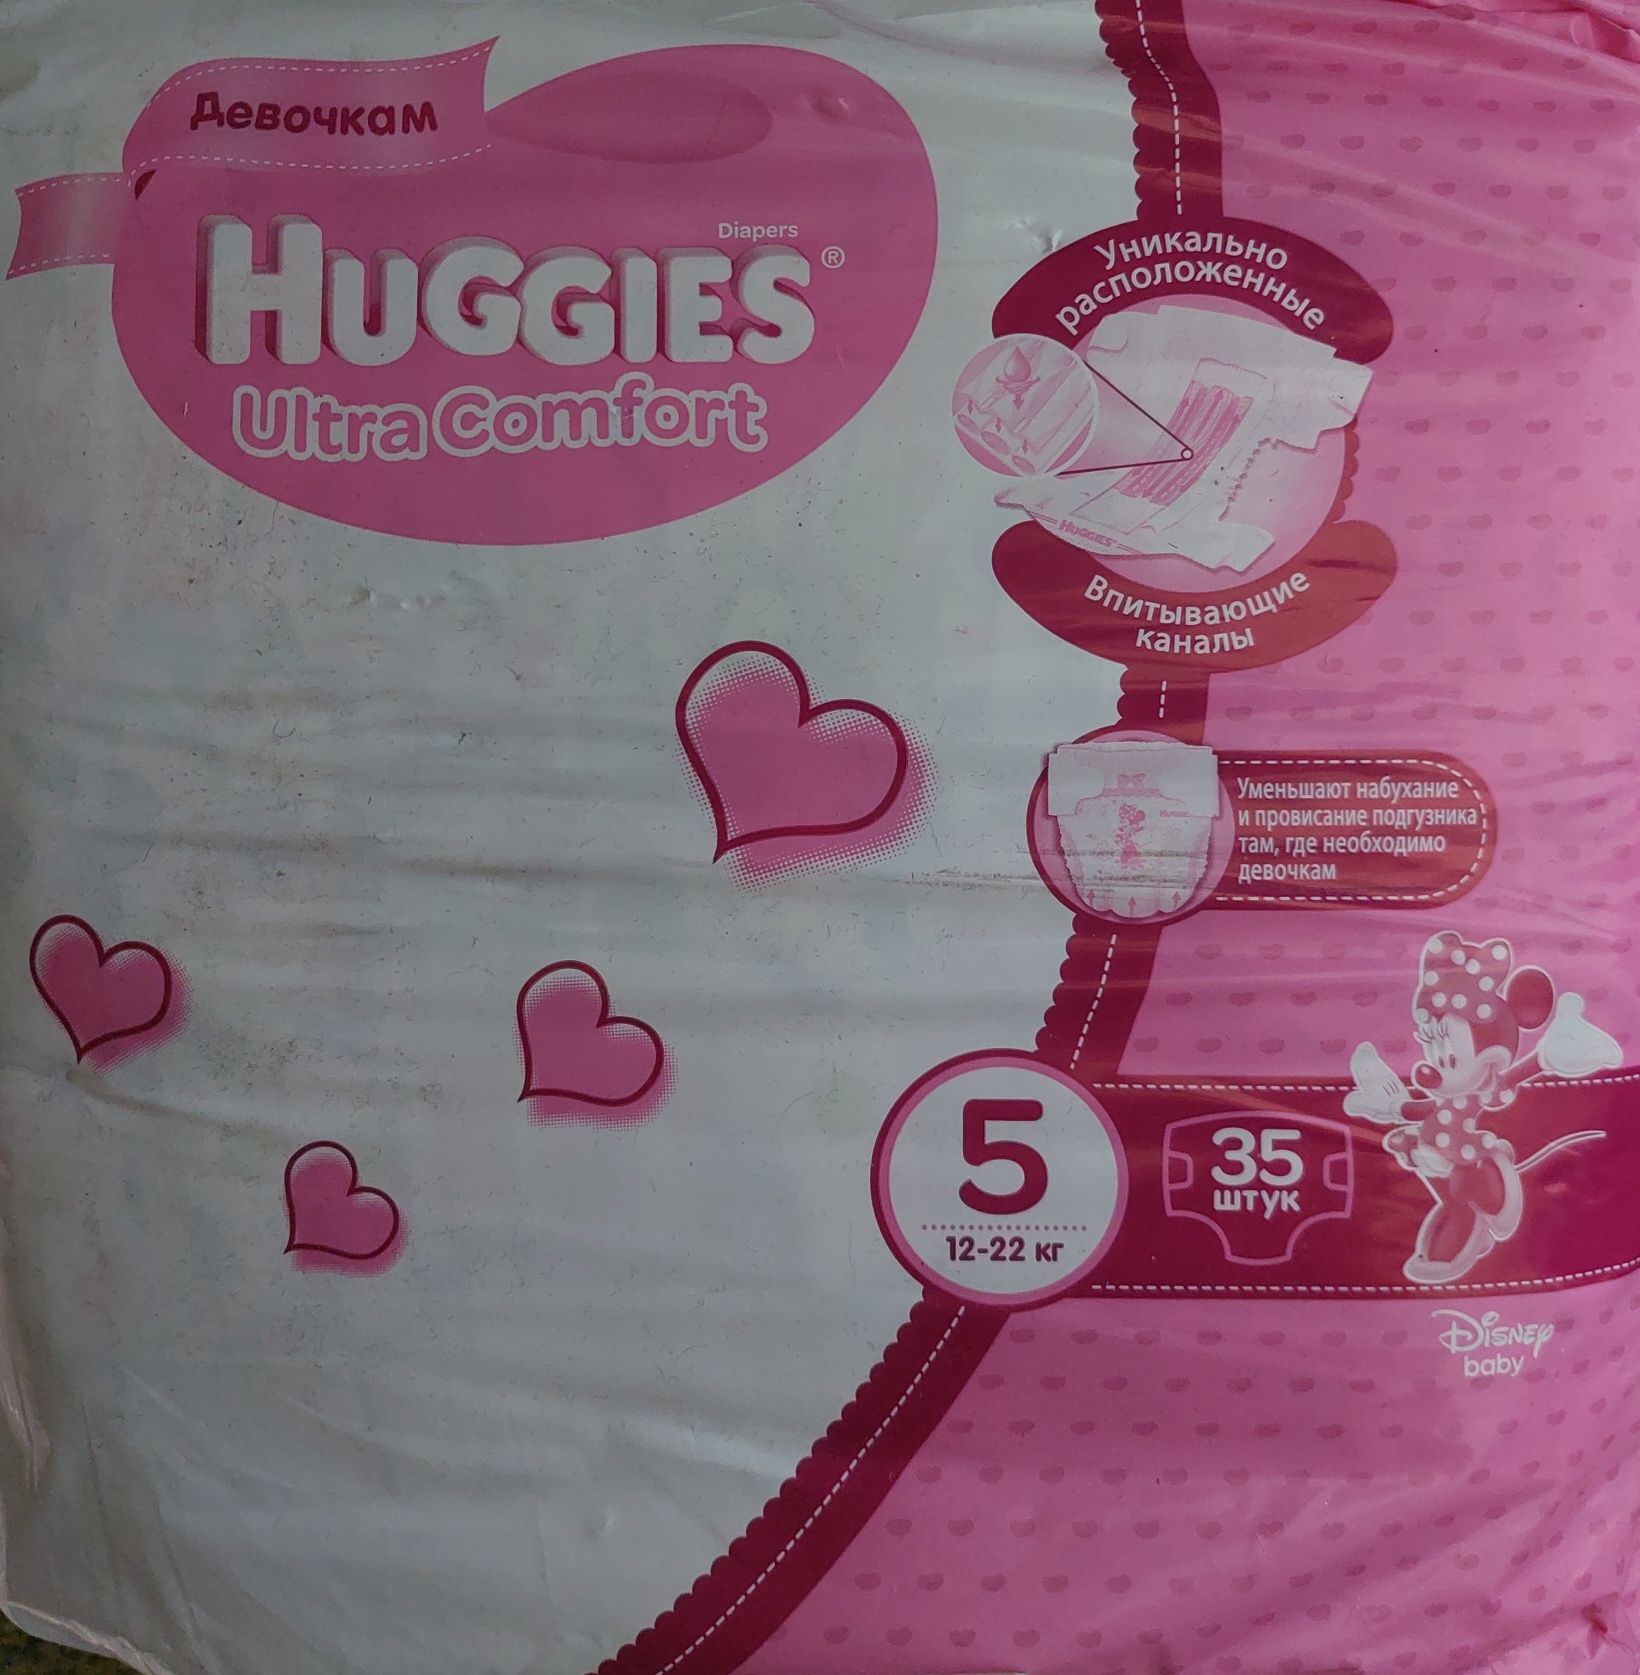 Продам памперсы Haggies-5 для девочек (58 шт)